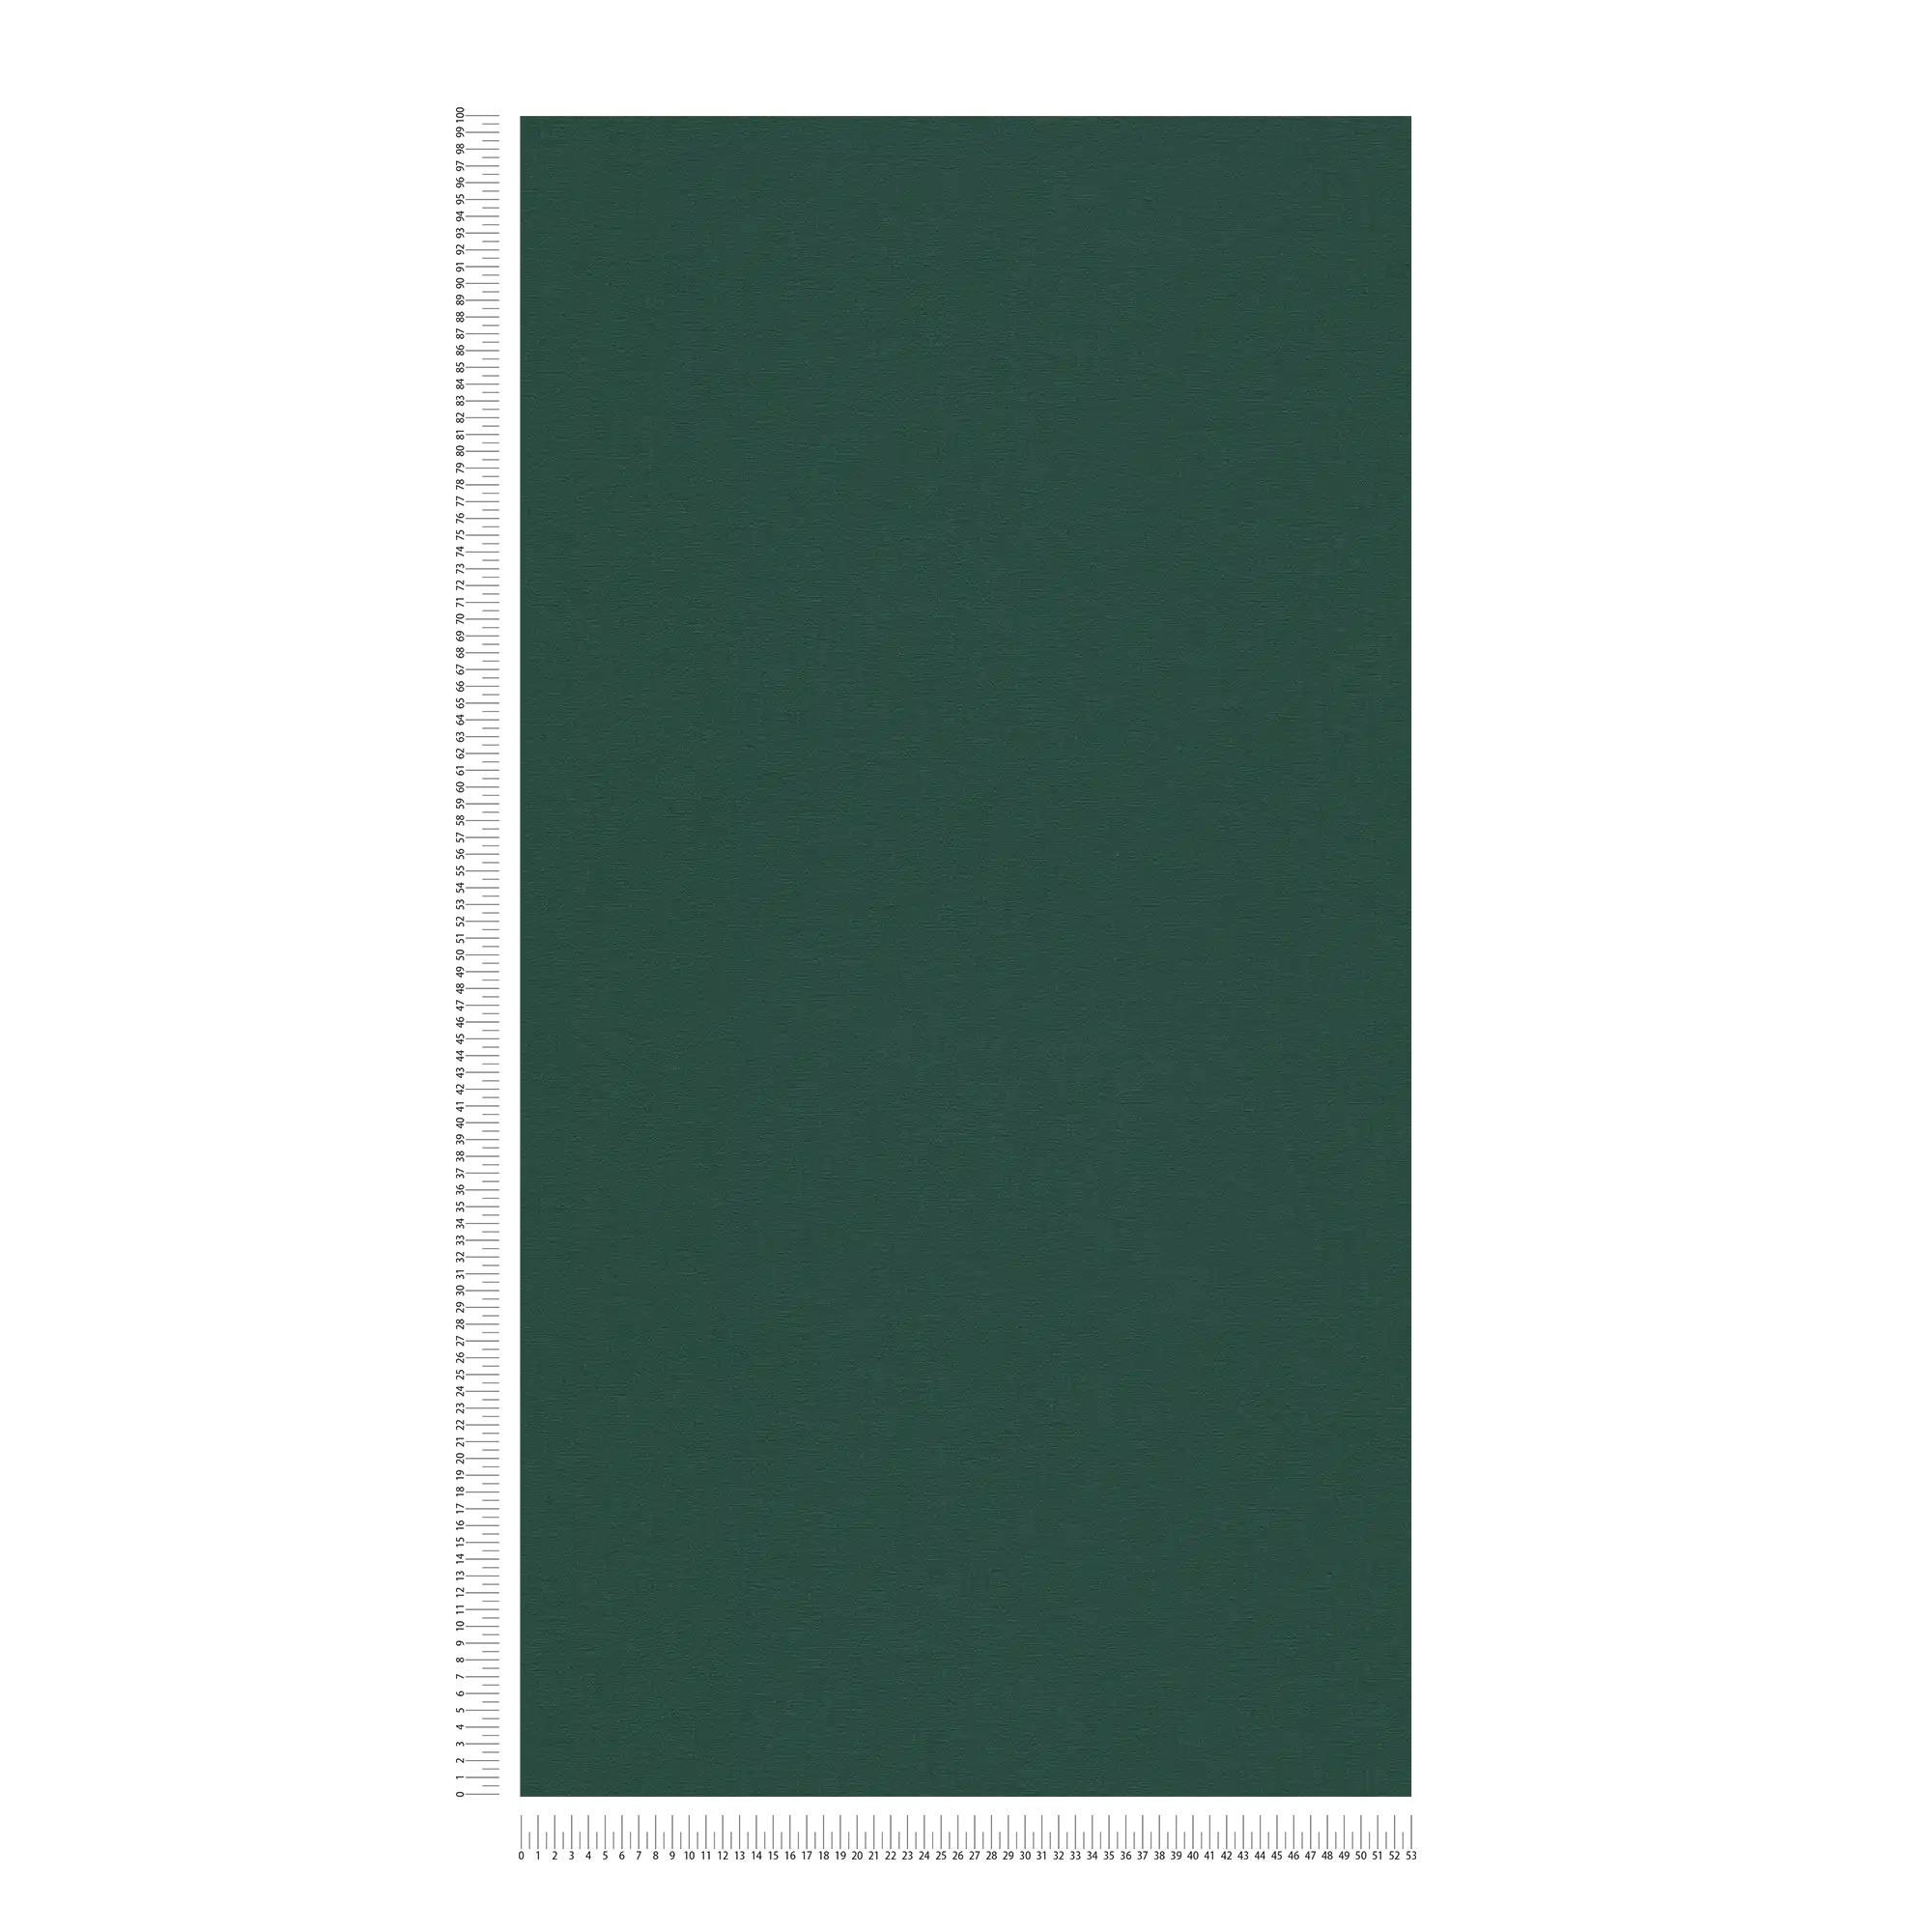             Eenheidsbehang met matte textielstructuur - groen, donkergroen
        